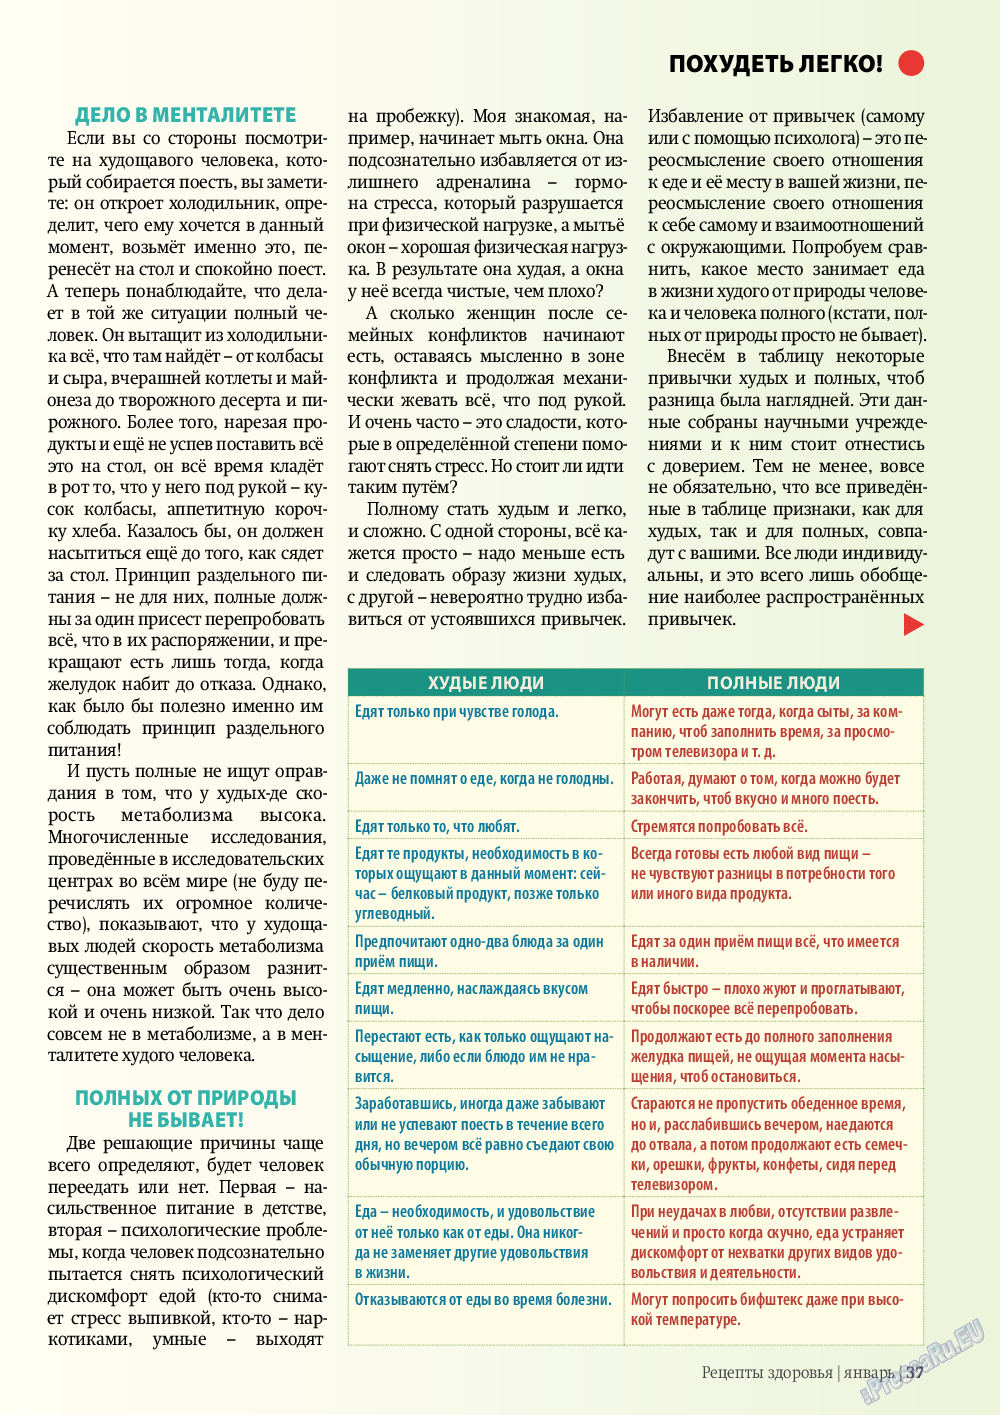 Рецепты здоровья (журнал). 2012 год, номер 1, стр. 37